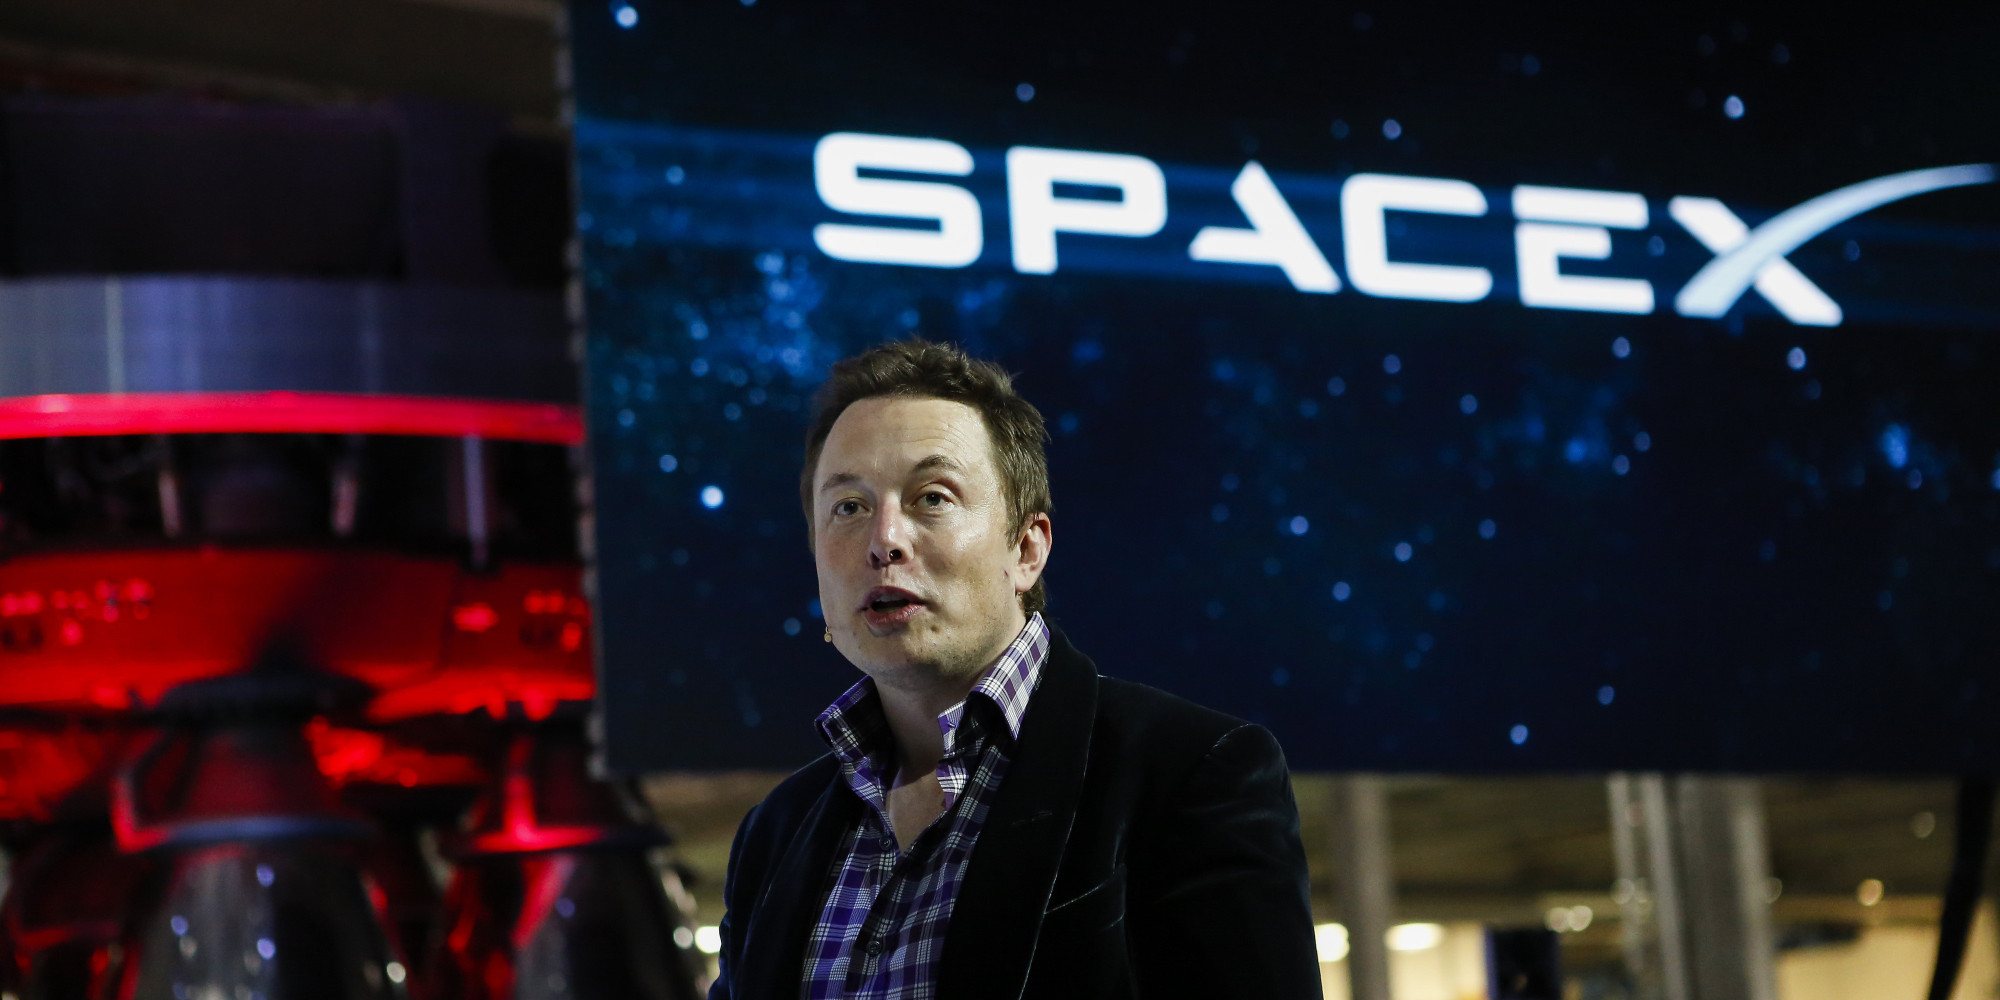 SpaceX'in Mars etkinliği başladı: Elon Musk konuşuyor (Canlı yayın)